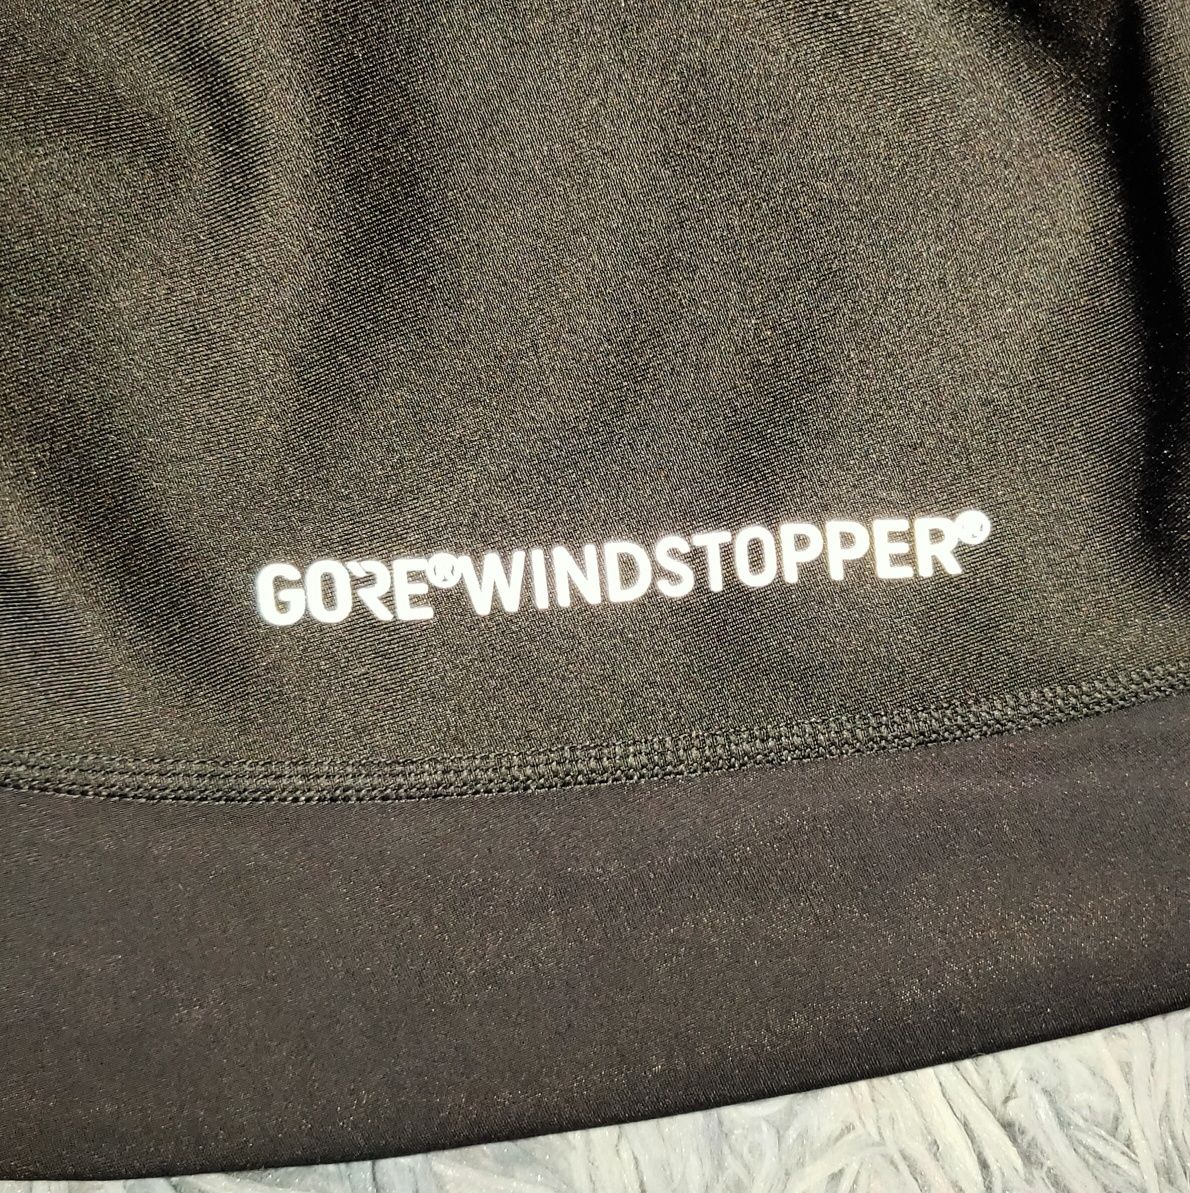 Spodnie męskie Gore Windstopper biegowe sportowe rowerowe